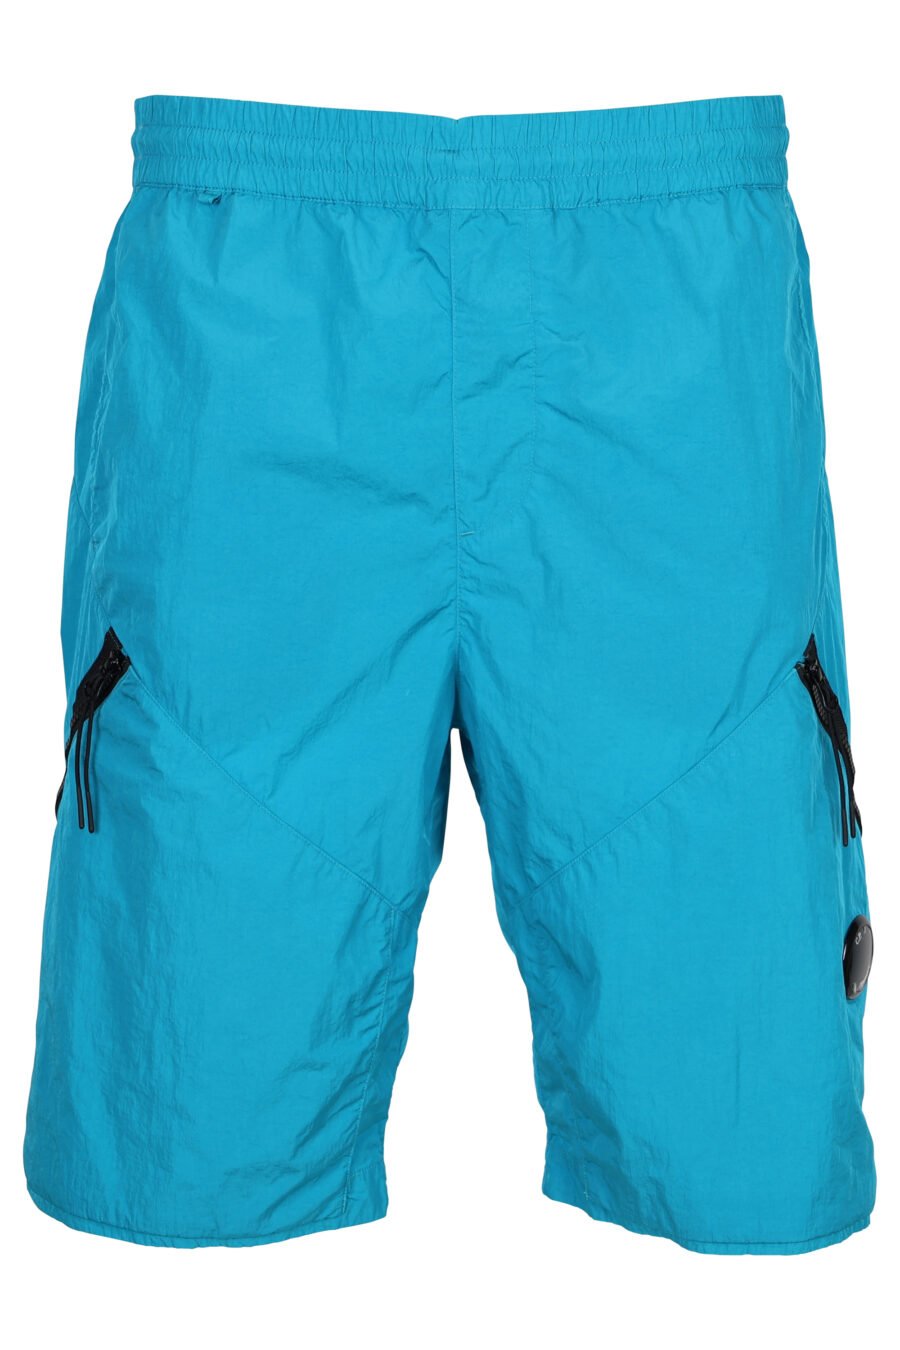 Türkisblaue Shorts mit diagonalem Reißverschluss und Linsenlogo - 7620943384529